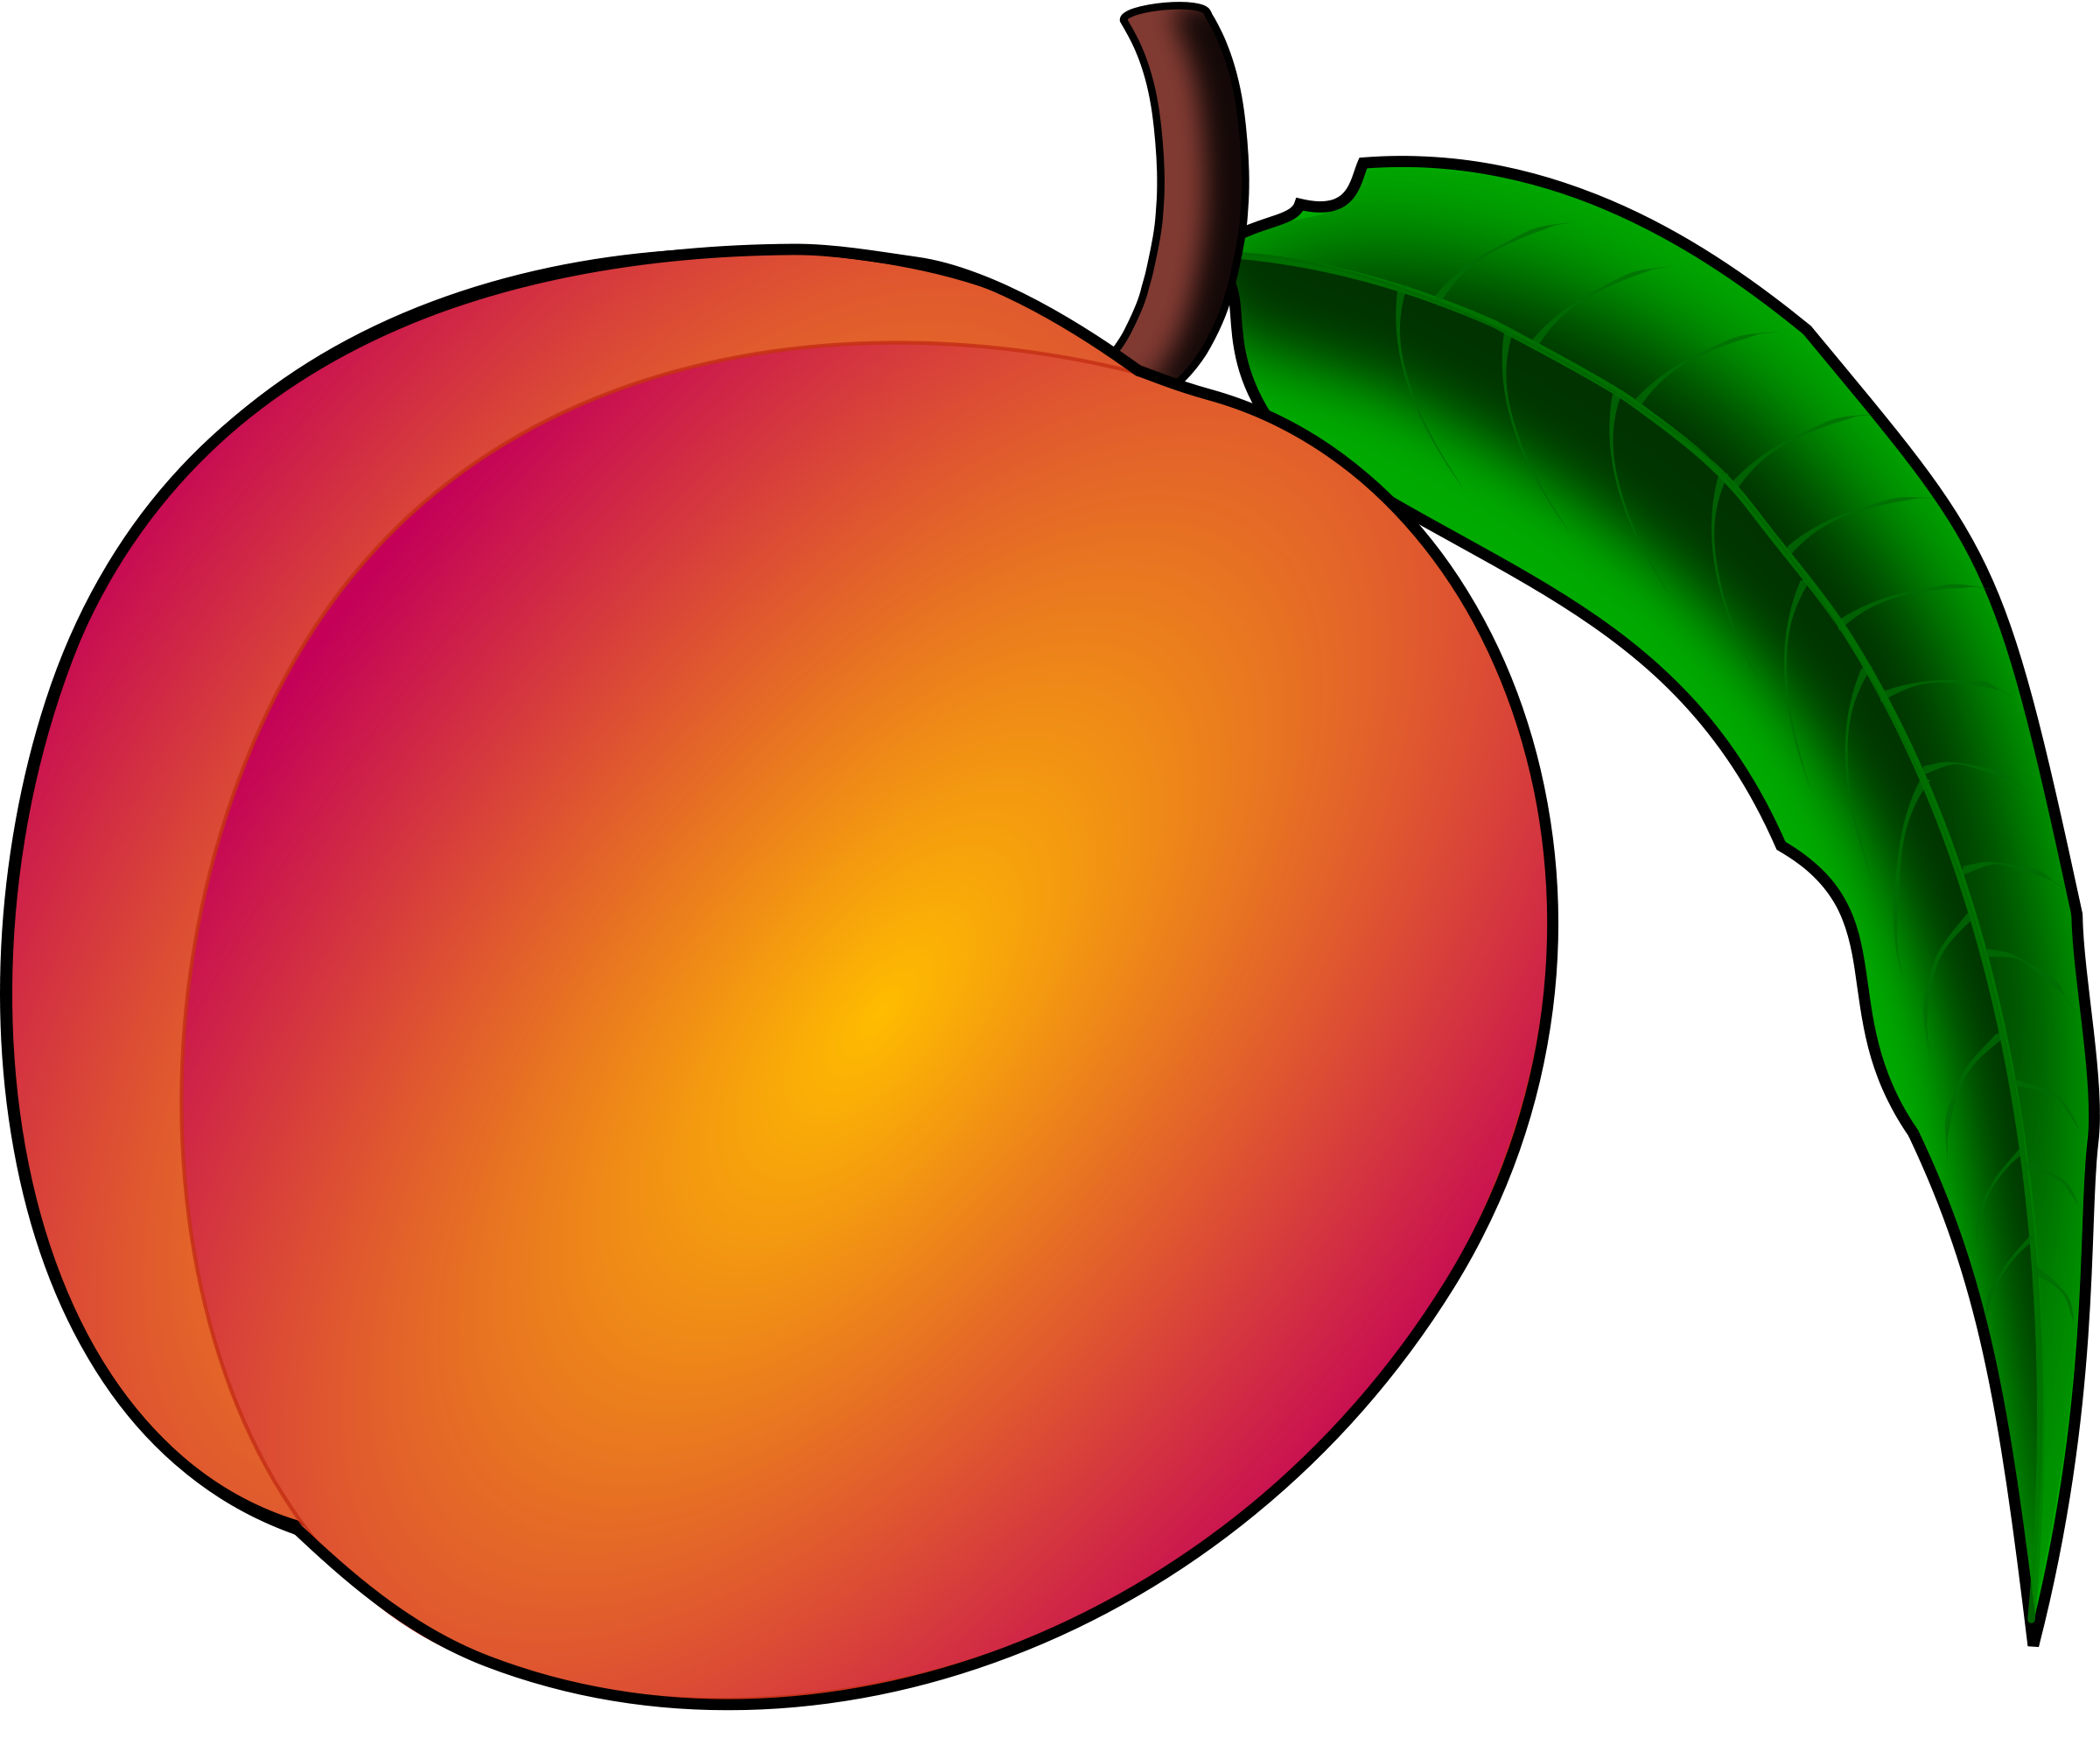 Peach Clip Art